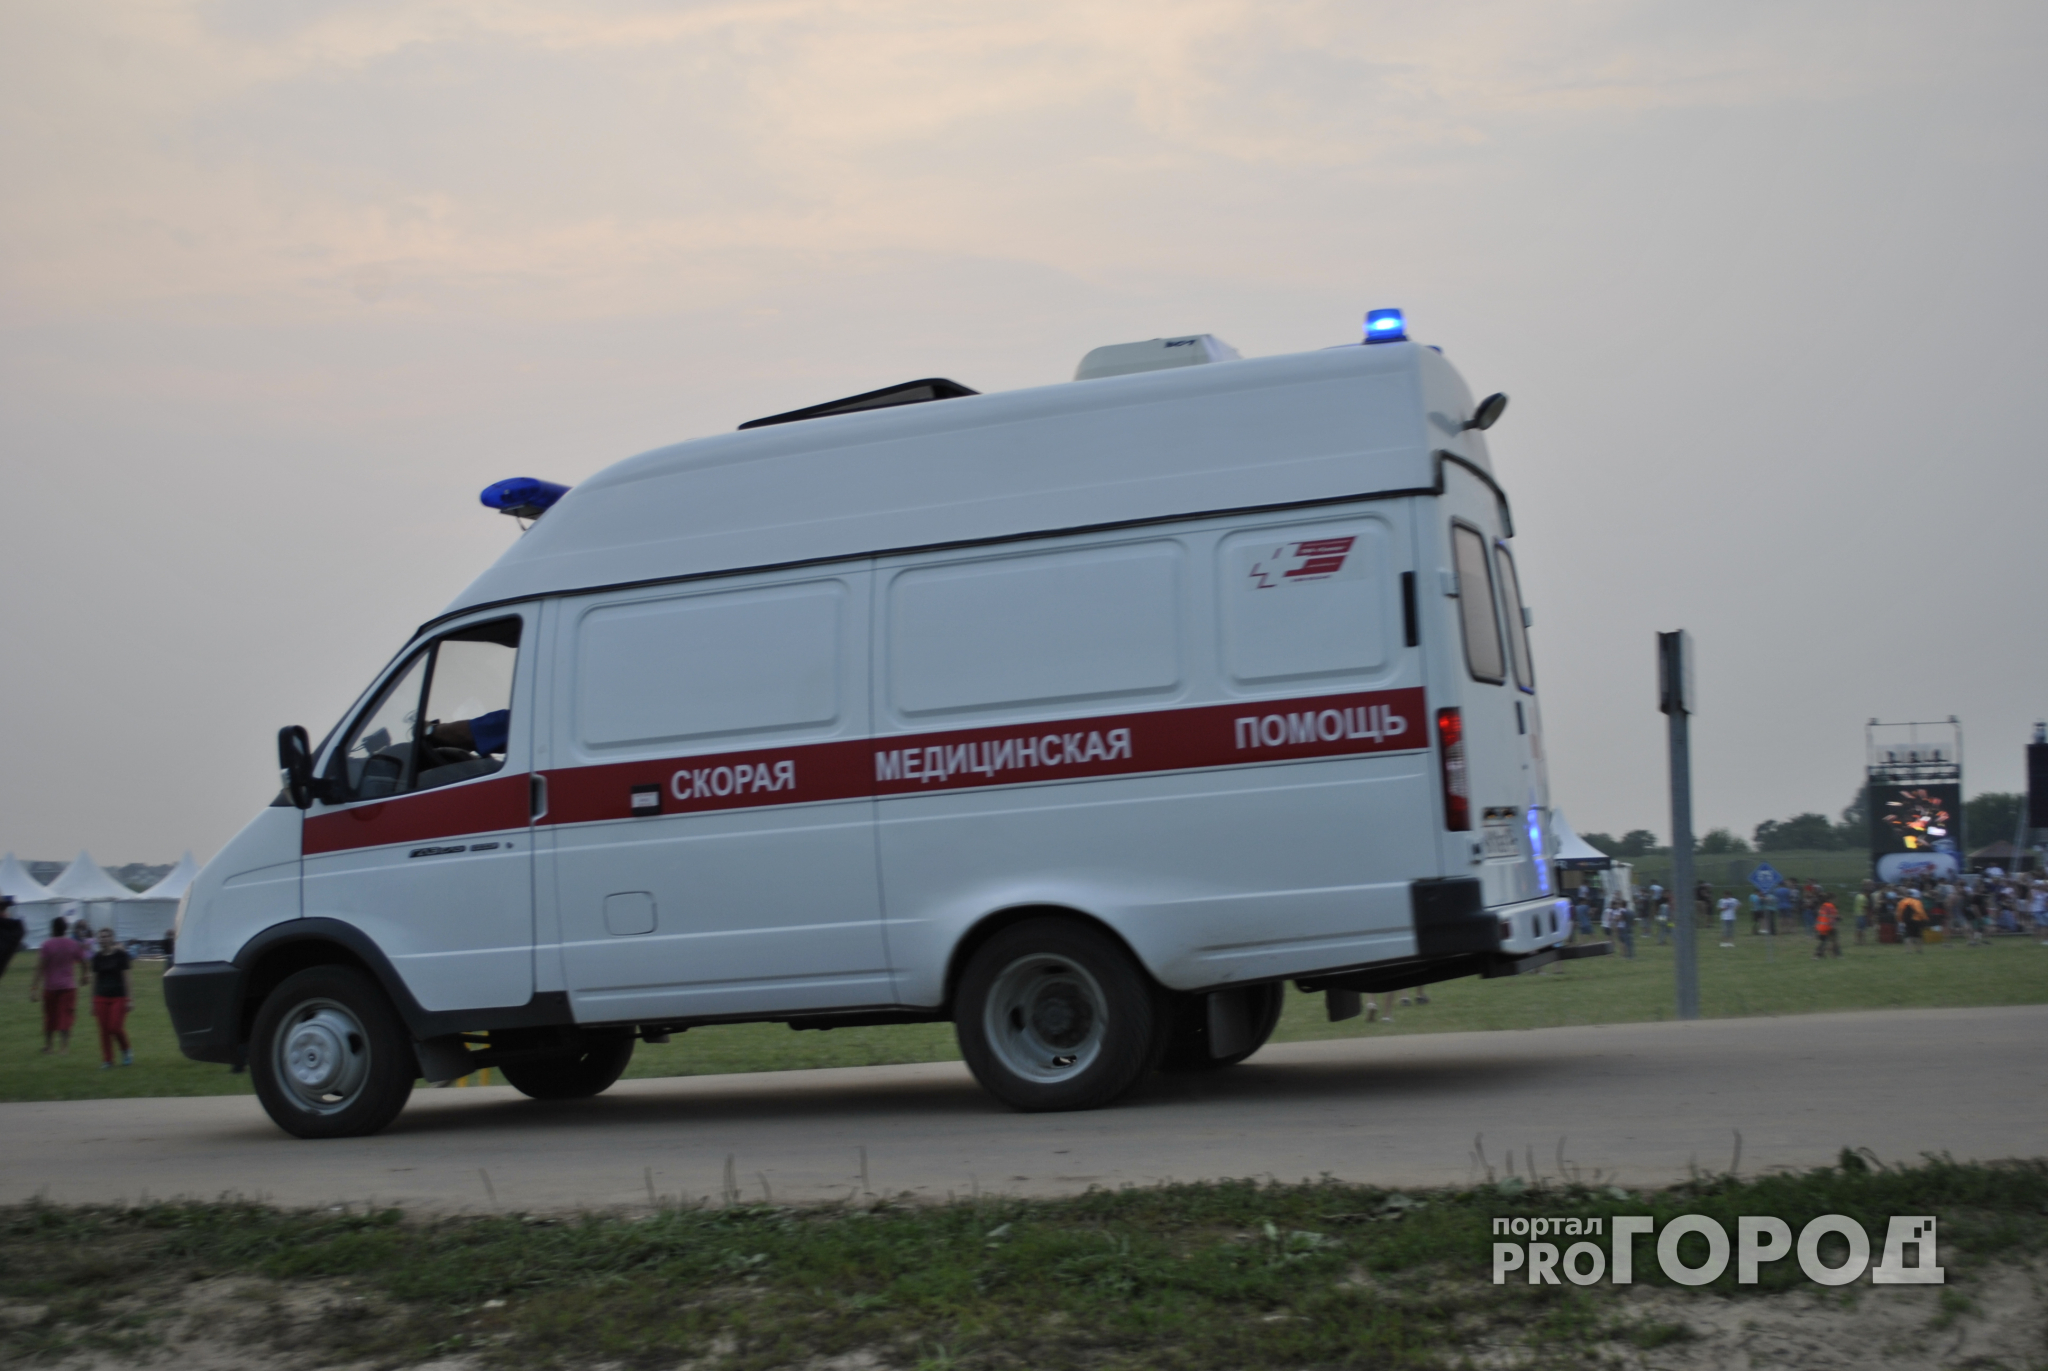 Водители скорой помощи в Кирове готовятся выйти на забастовку